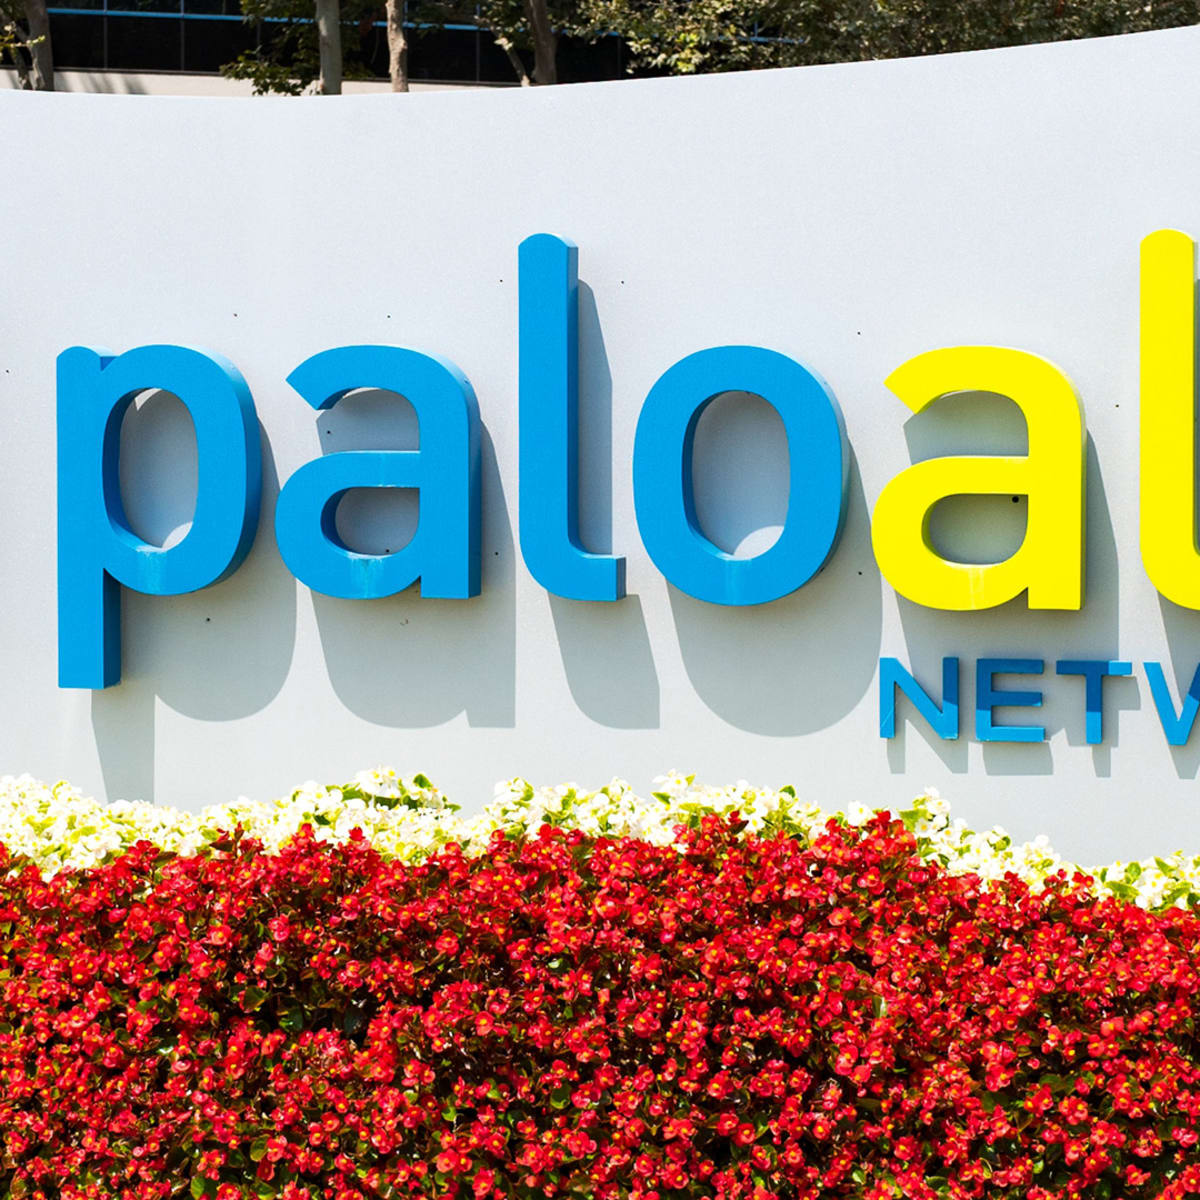 Brand - Palo Alto Networks